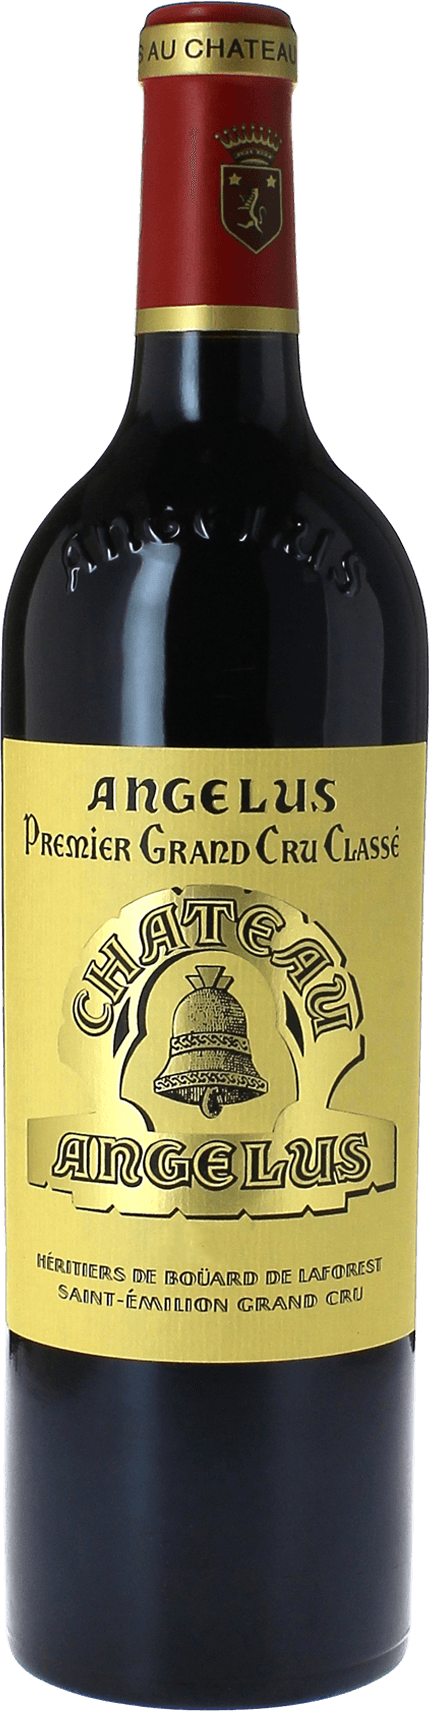 Angelus 1992 1er Grand cru B class Saint-Emilion, Bordeaux rouge